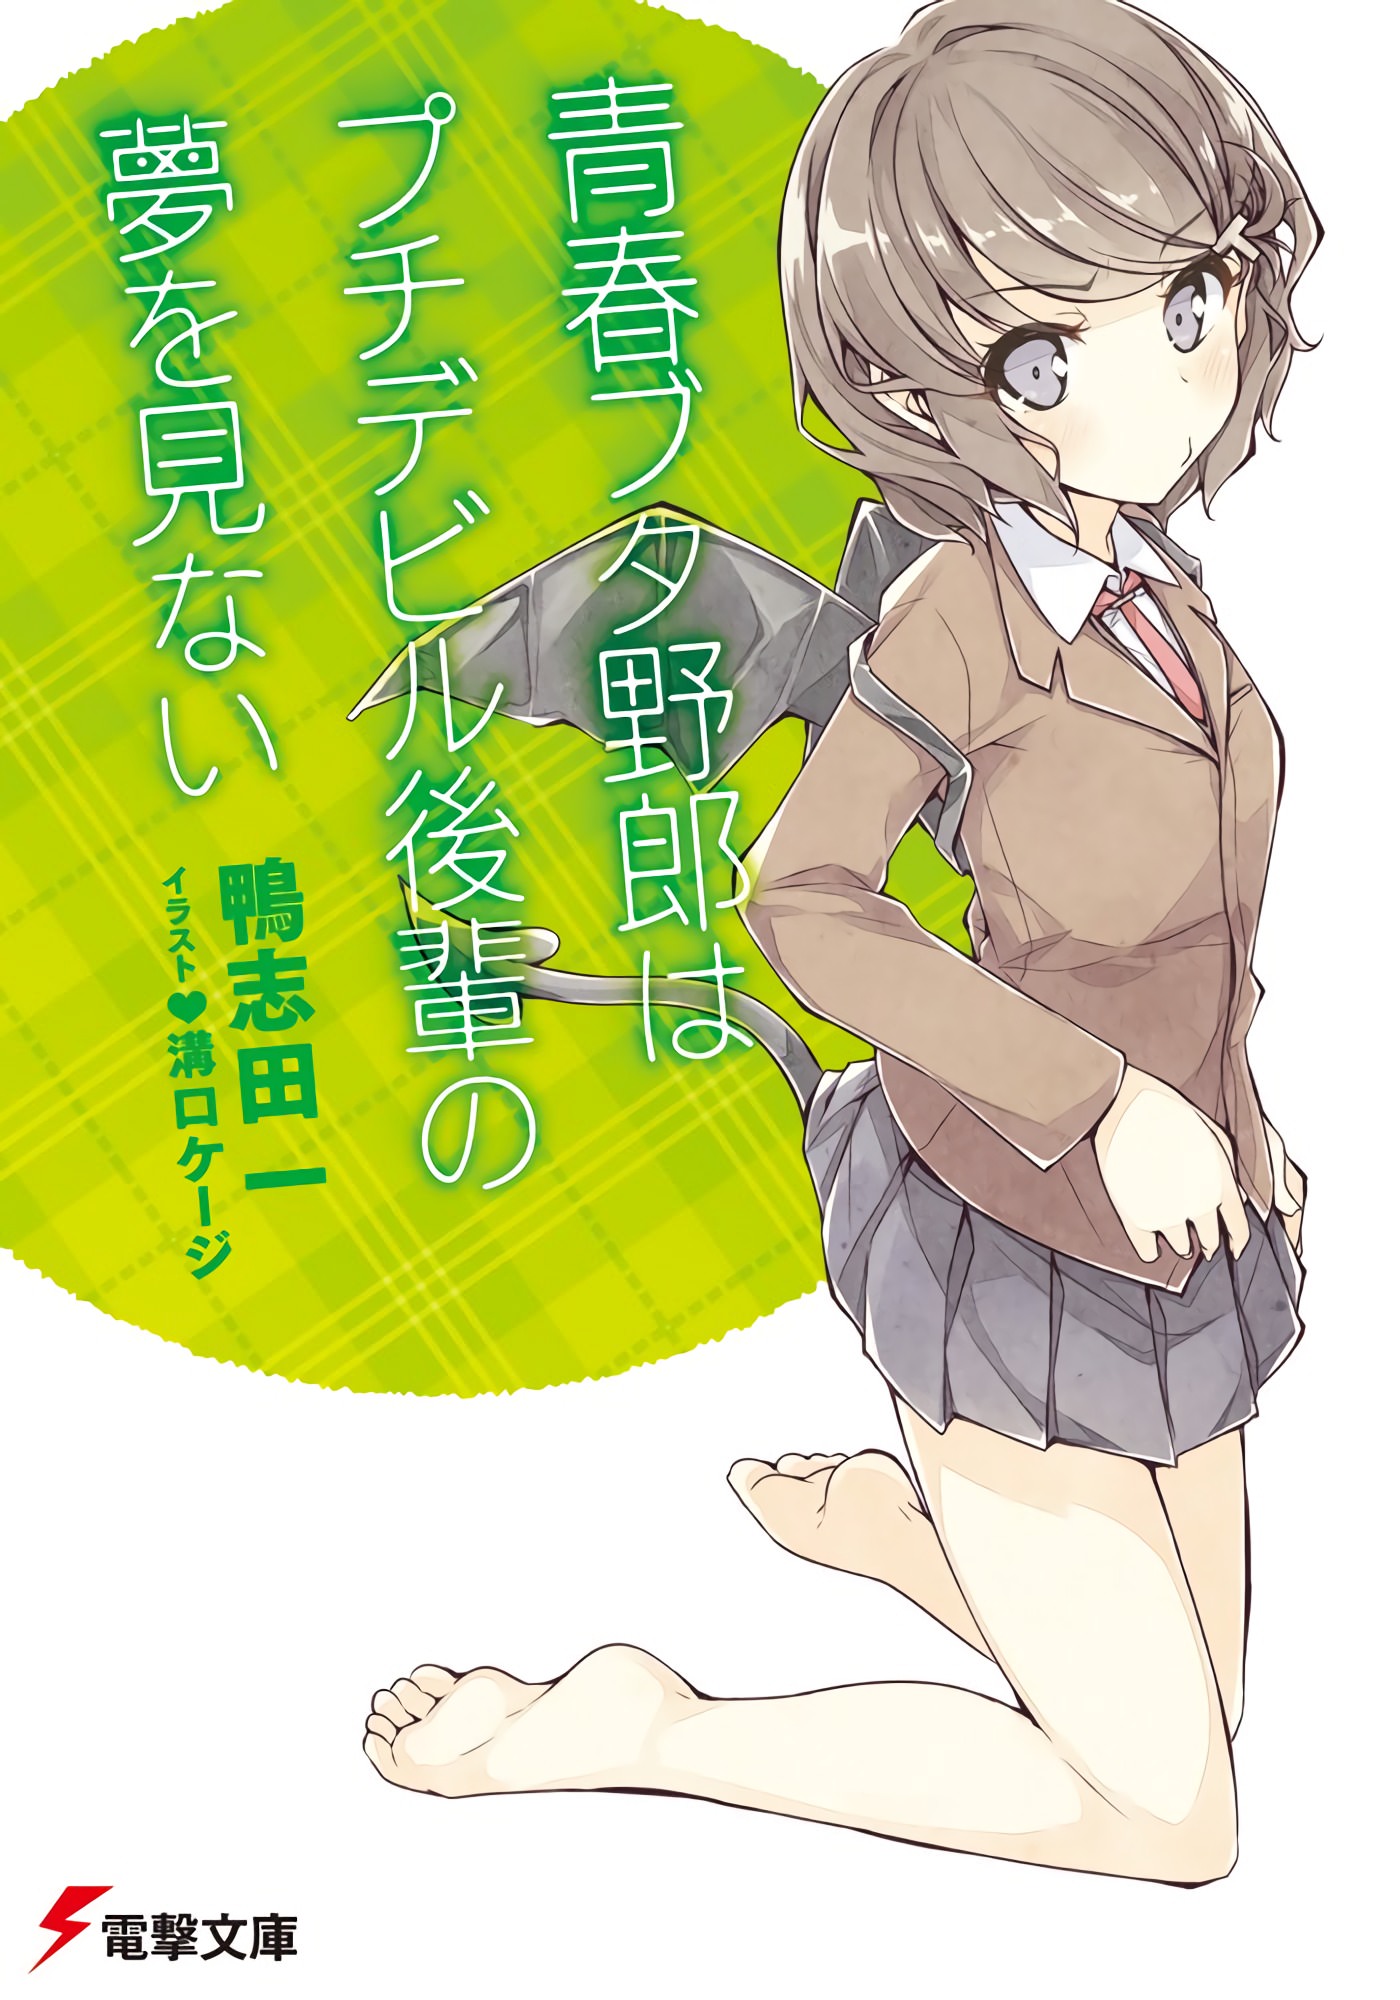 Light Novel Volume 5, Seishun Buta Yarou wa Bunny Girl Senpai no Yume wo  Minai Wiki